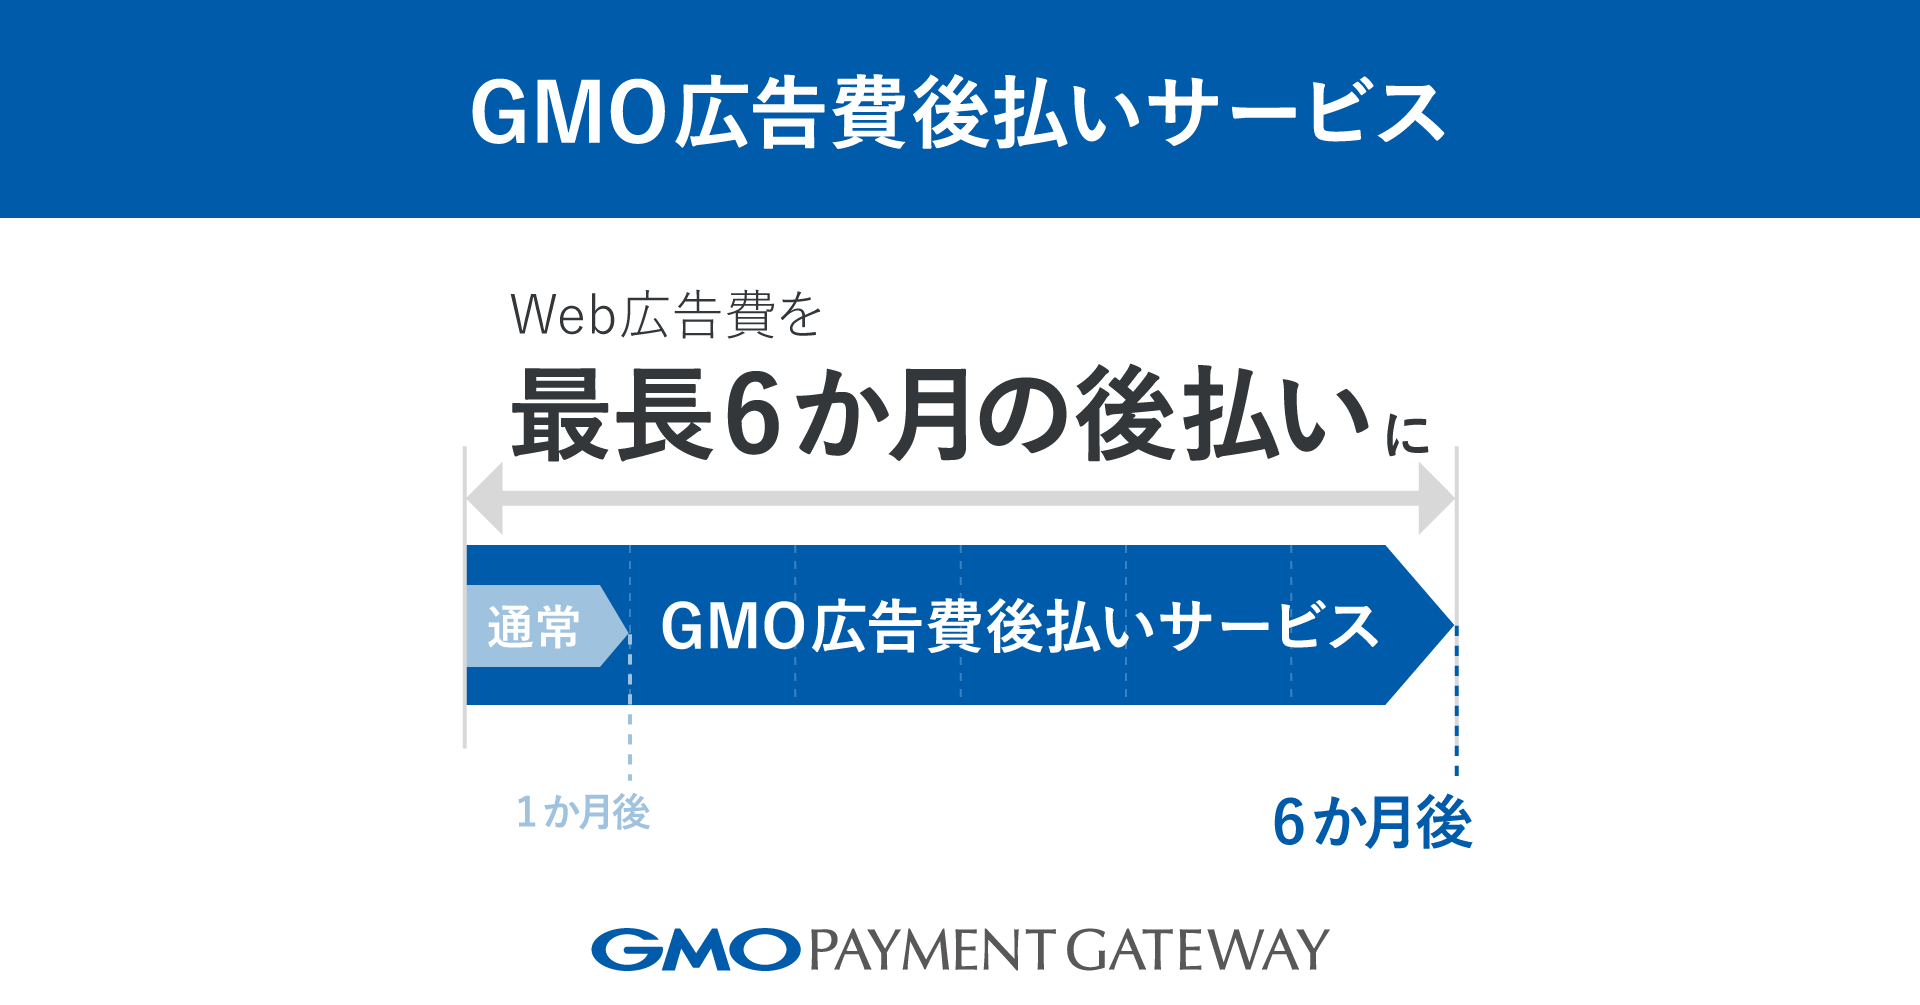 Web広告費を最長6か月の後払いにする「GMO広告費後払いサービス」を提供開始